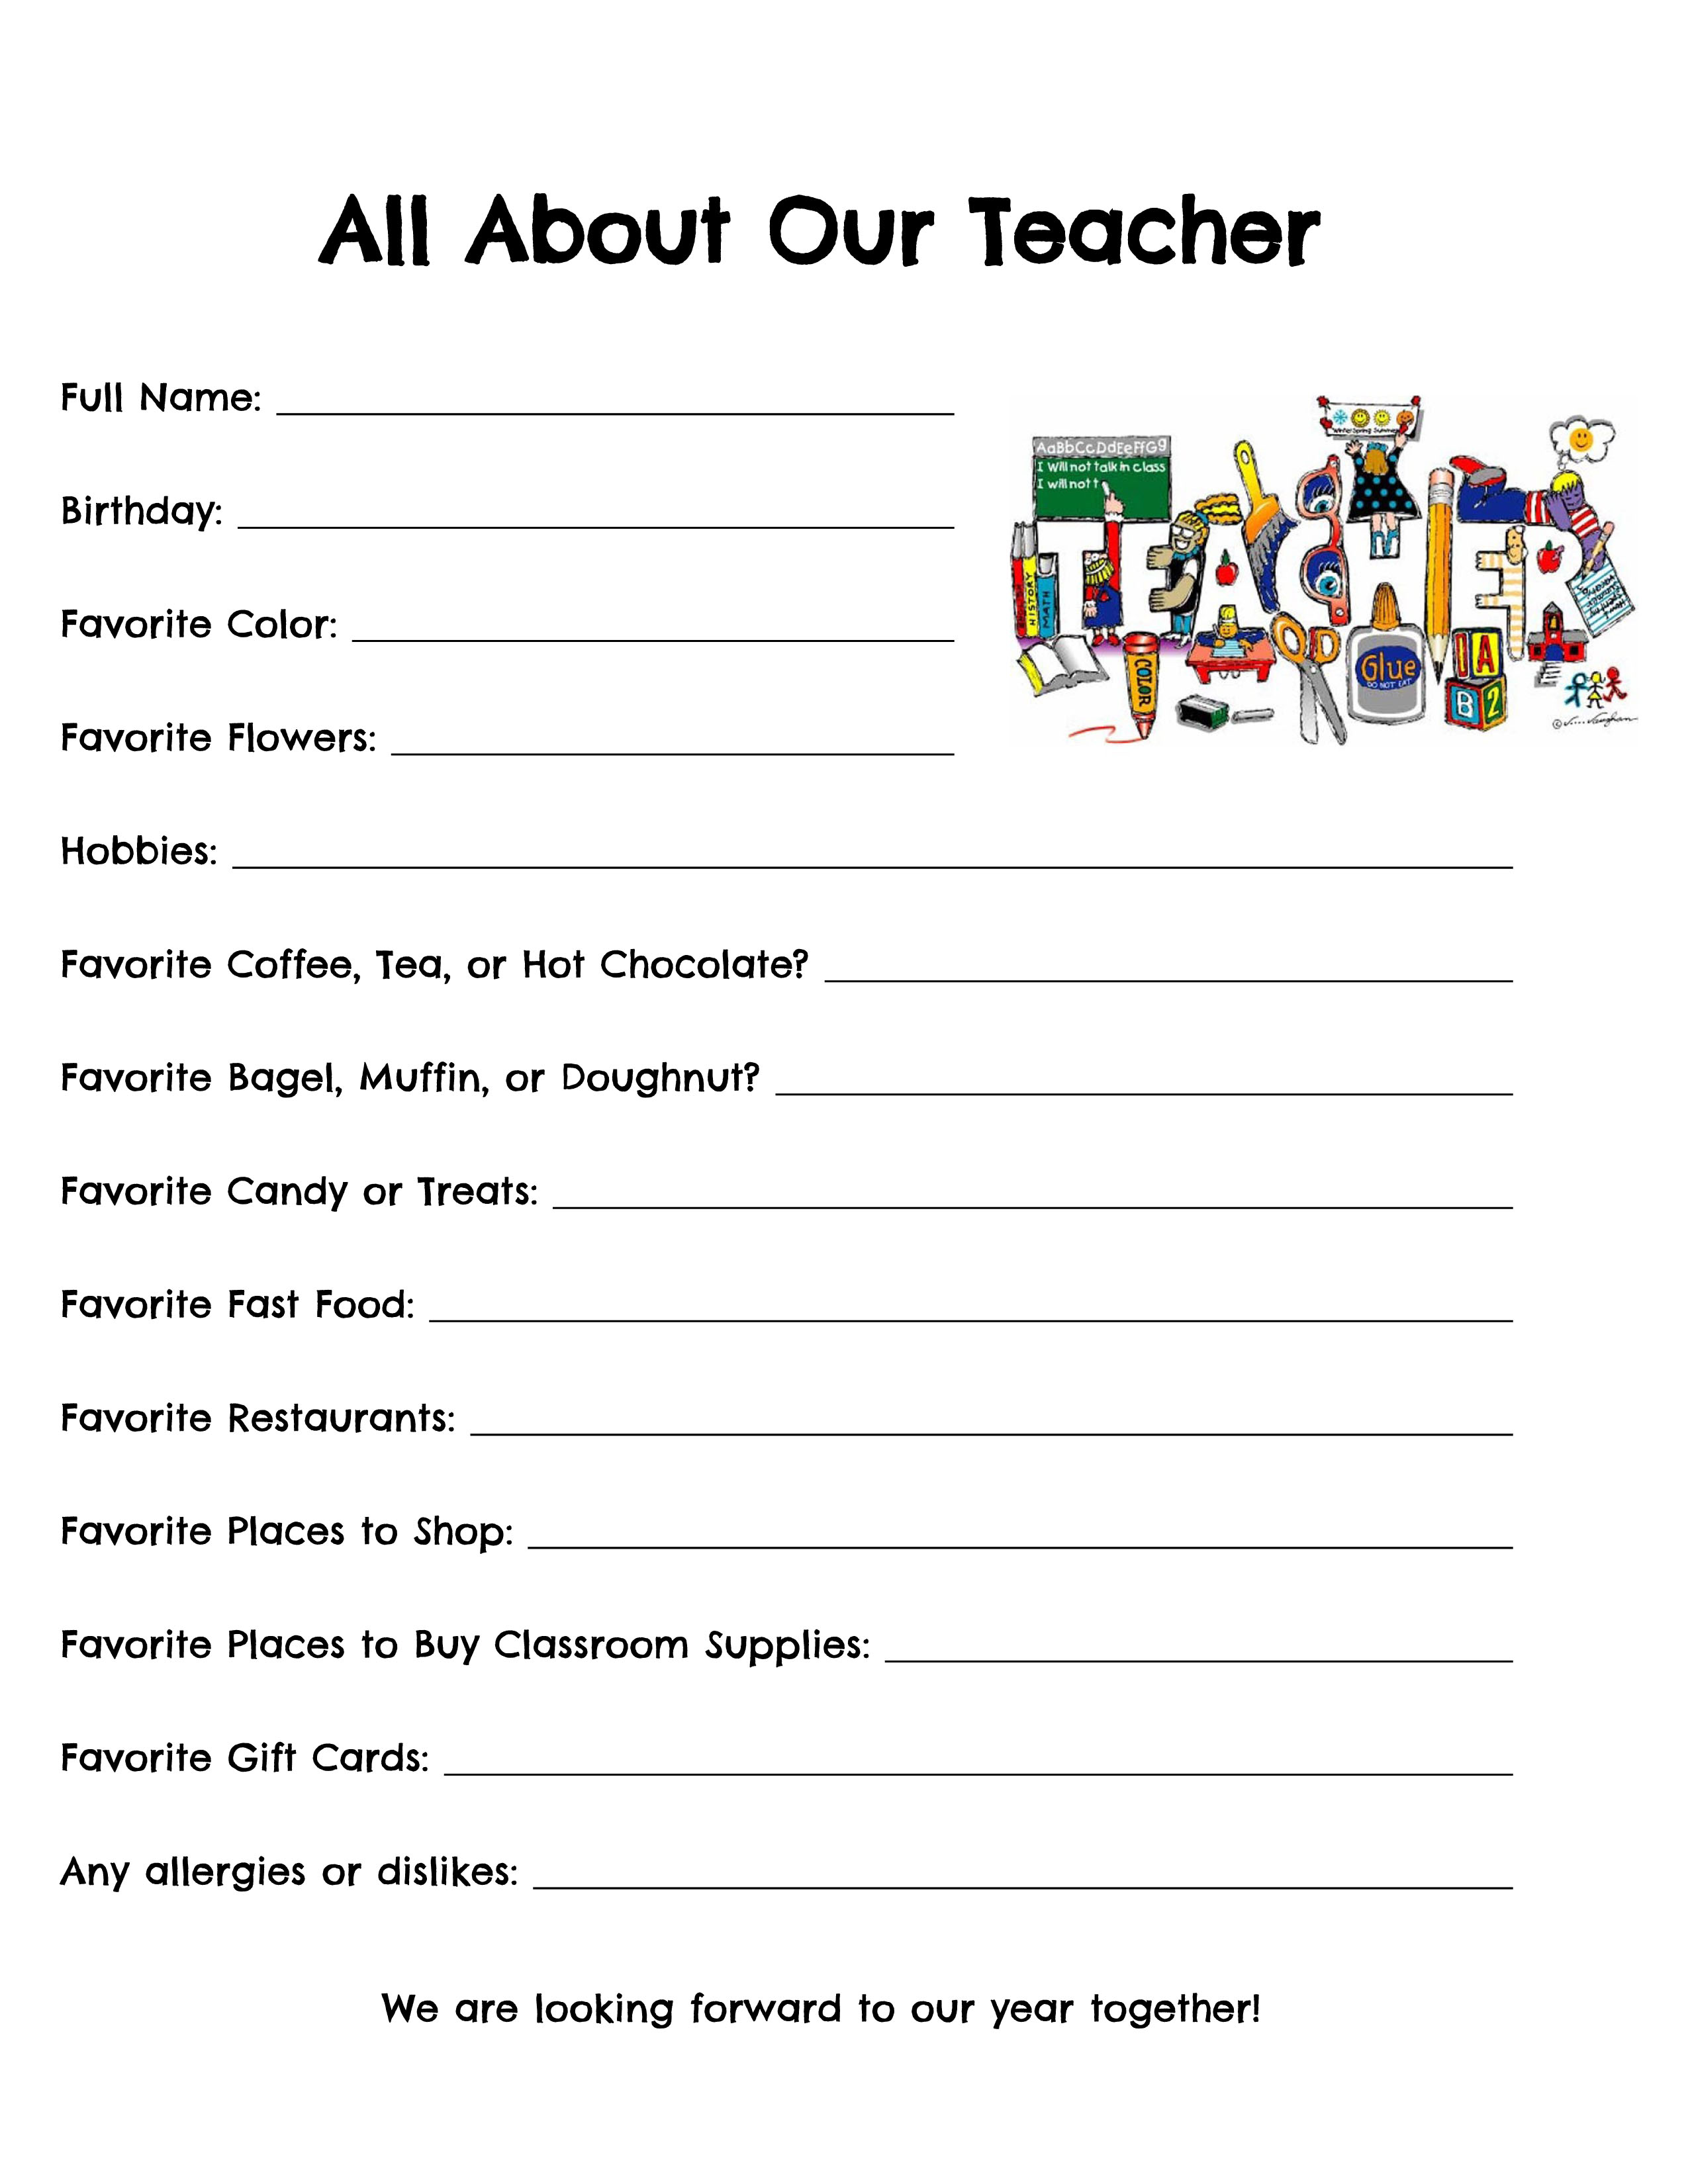 CH Teacher Survey 2